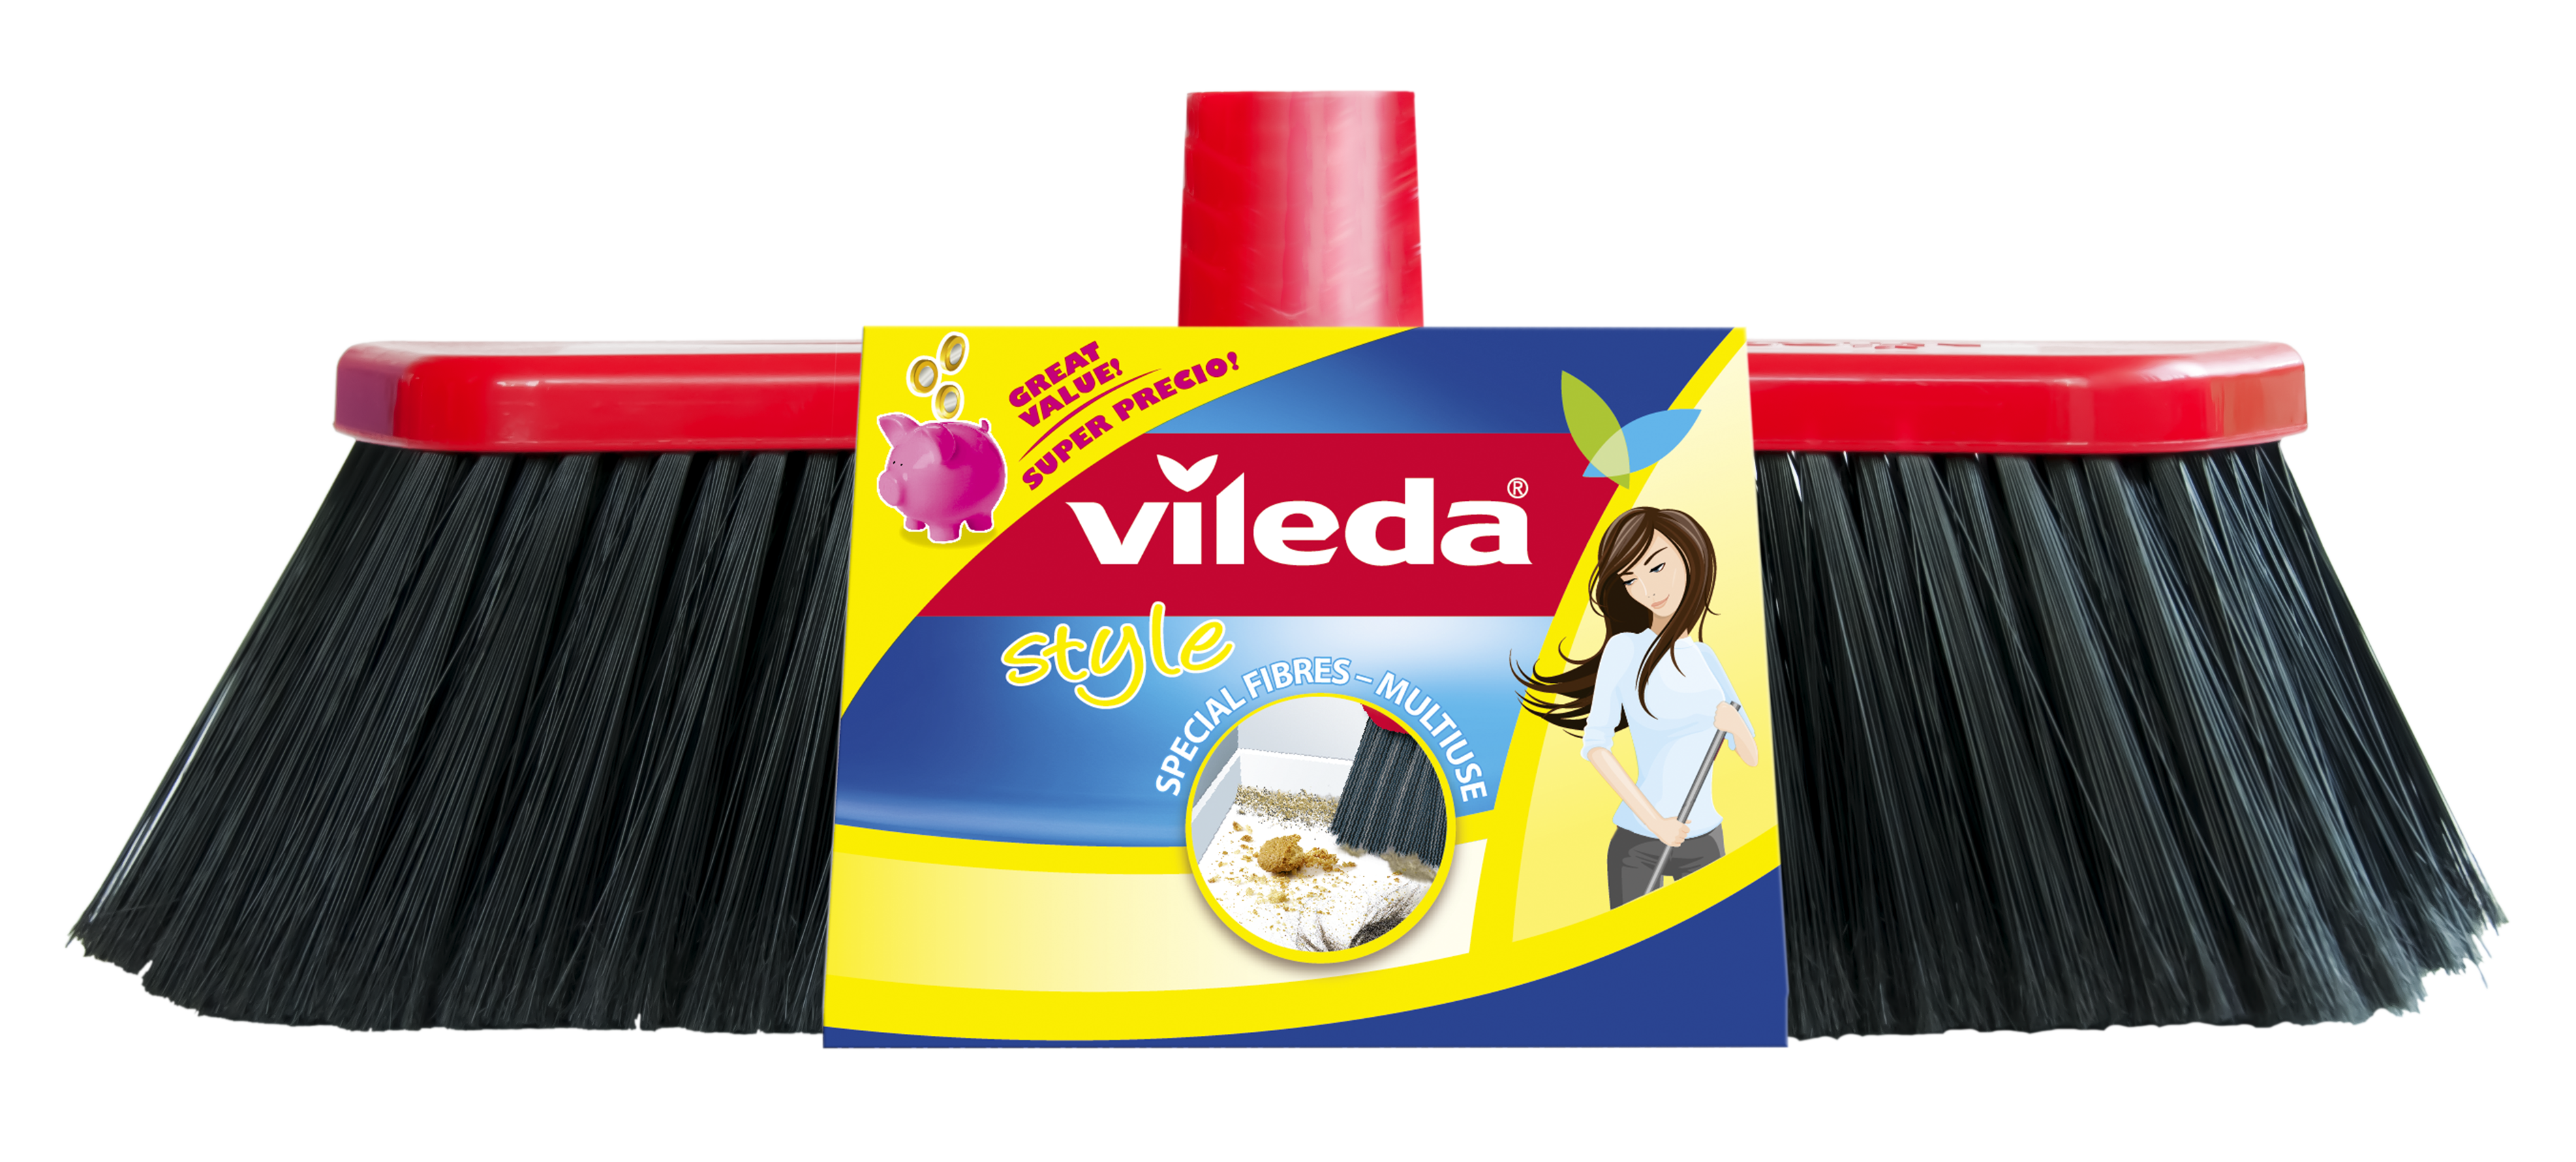 Σκούπα Vileda Style (1 τεμ)